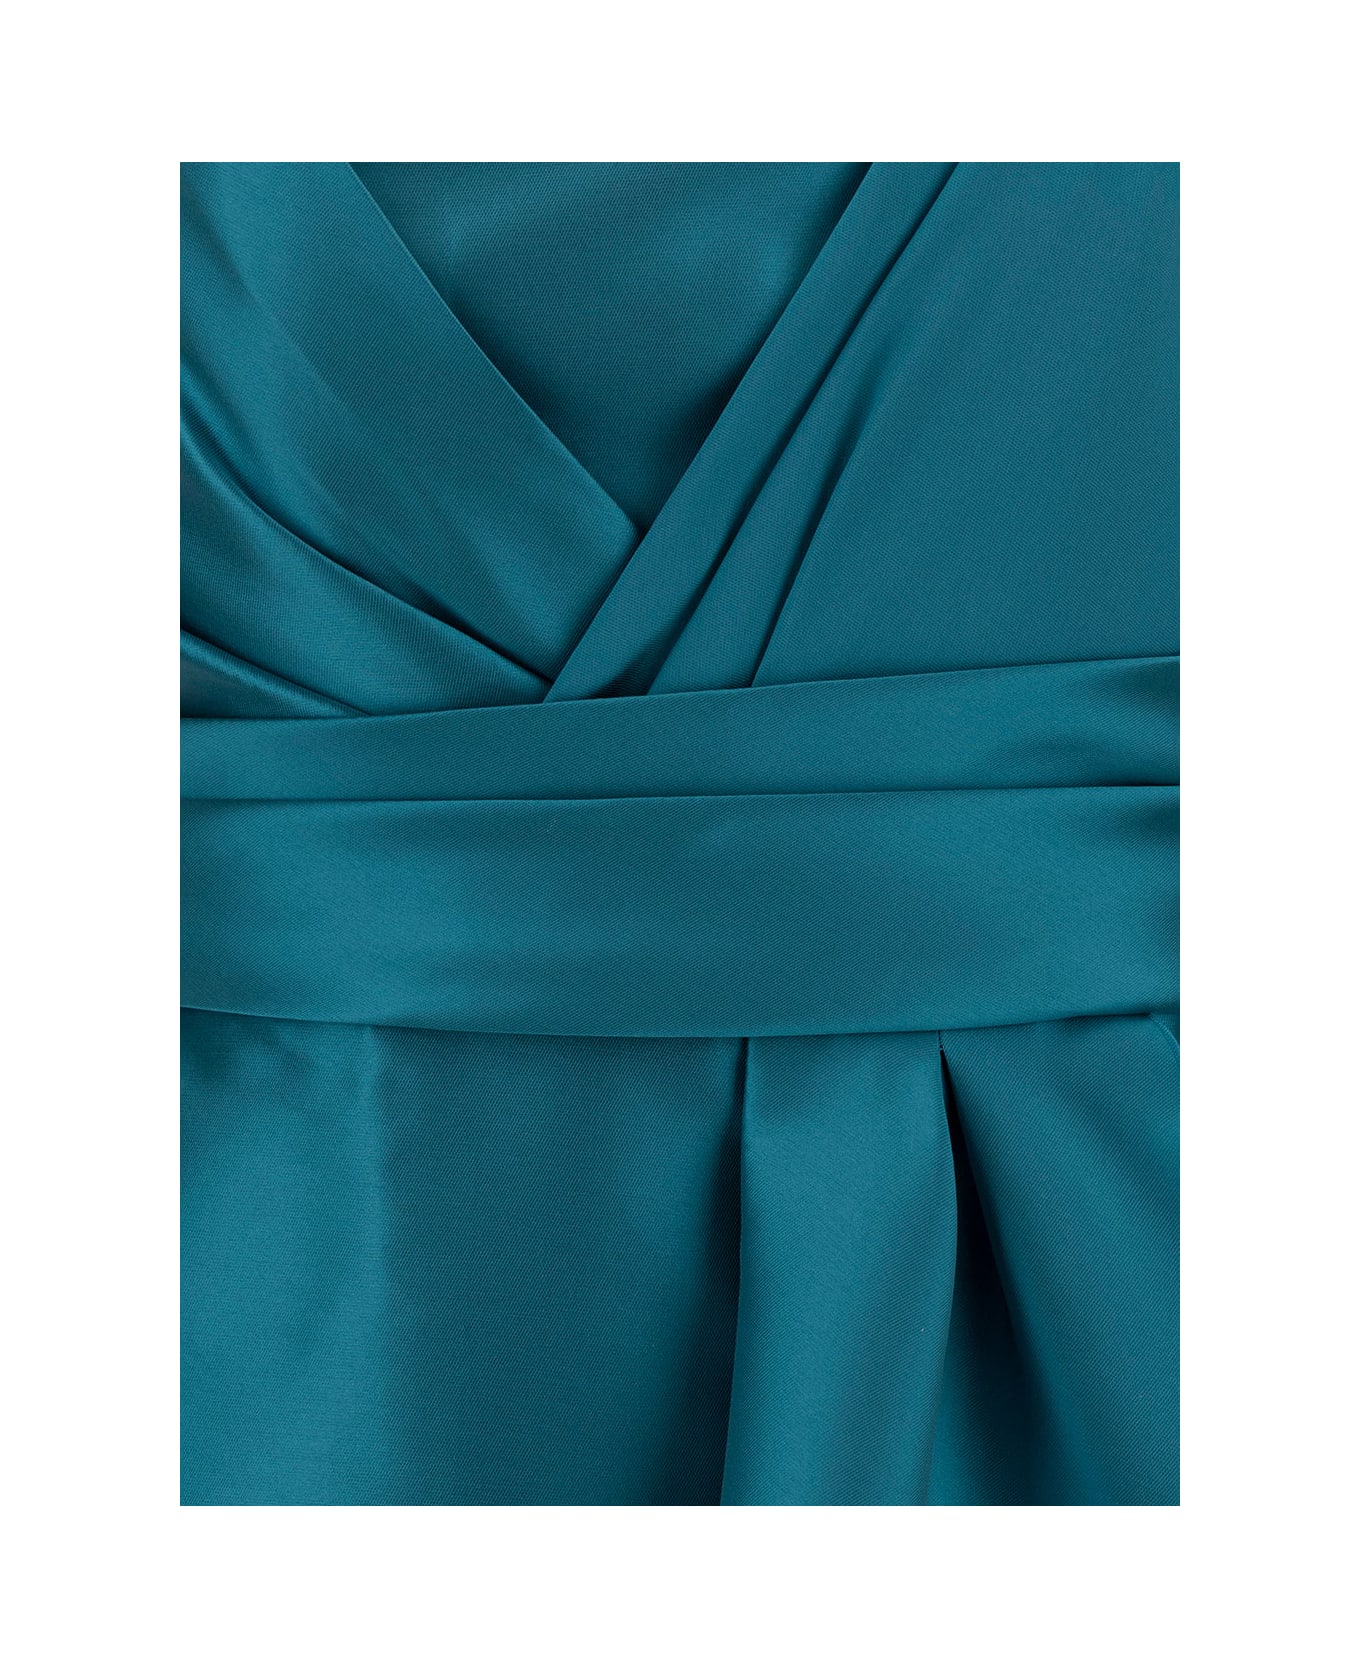 Alberta Ferretti 'mikado' Light Blue Maxi One-shoulder Draped Dress In Satin Woman - Light blue